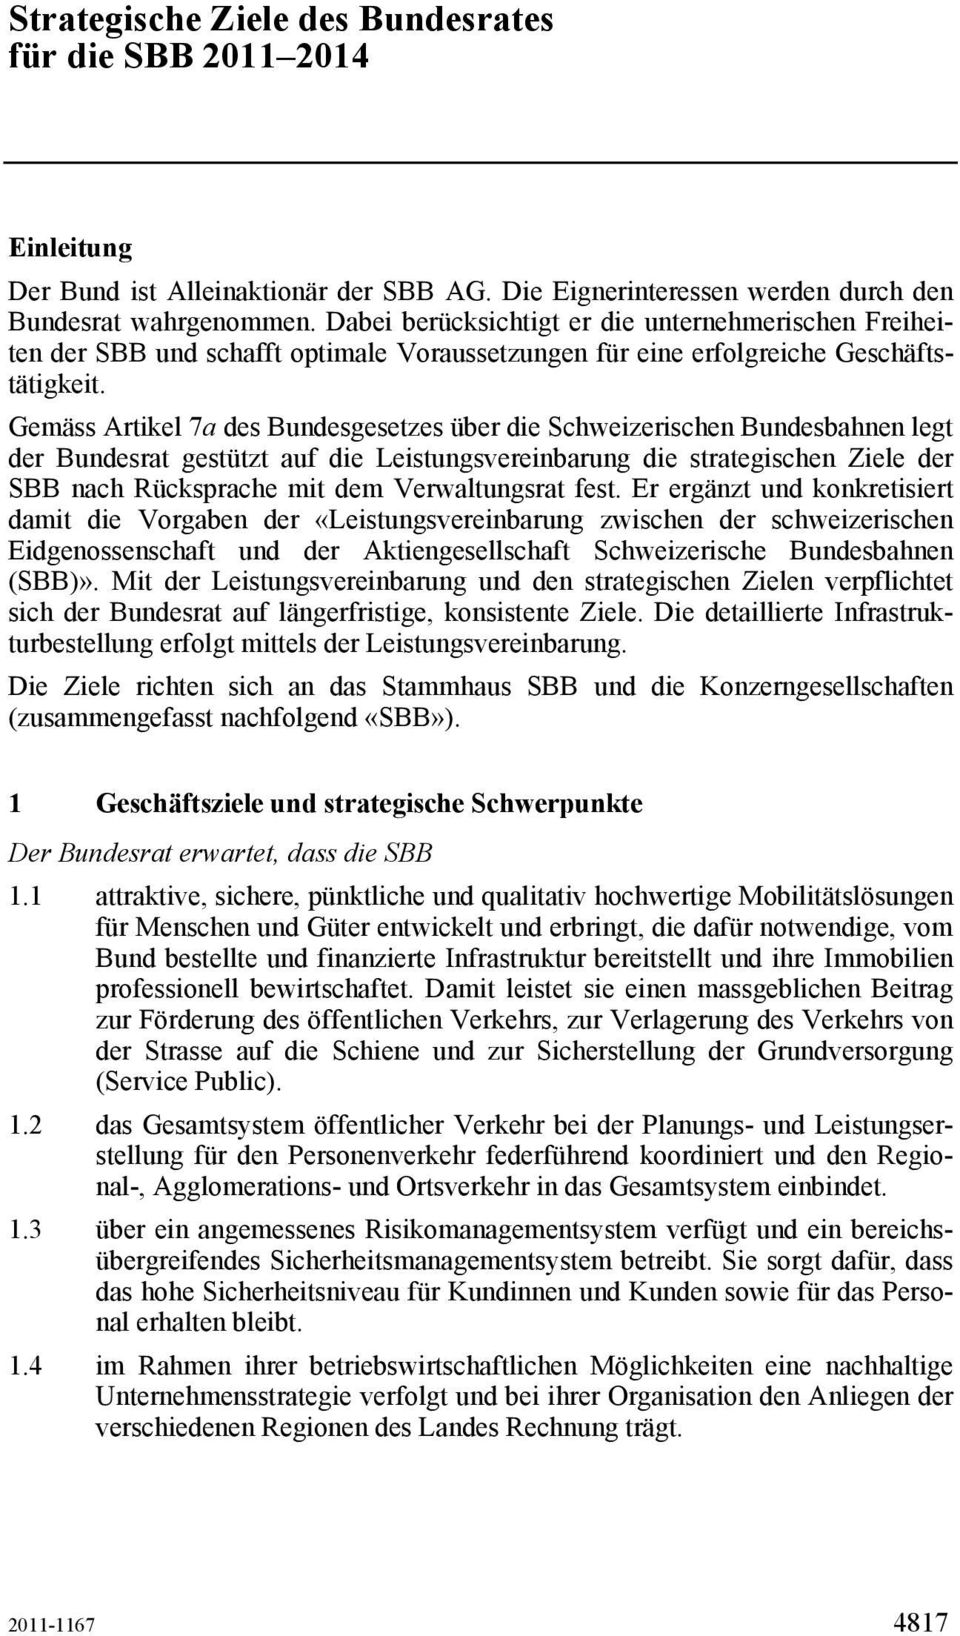 Gemäss Artikel 7a des Bundesgesetzes über die Schweizerischen Bundesbahnen legt der Bundesrat gestützt auf die Leistungsvereinbarung die strategischen Ziele der SBB nach Rücksprache mit dem